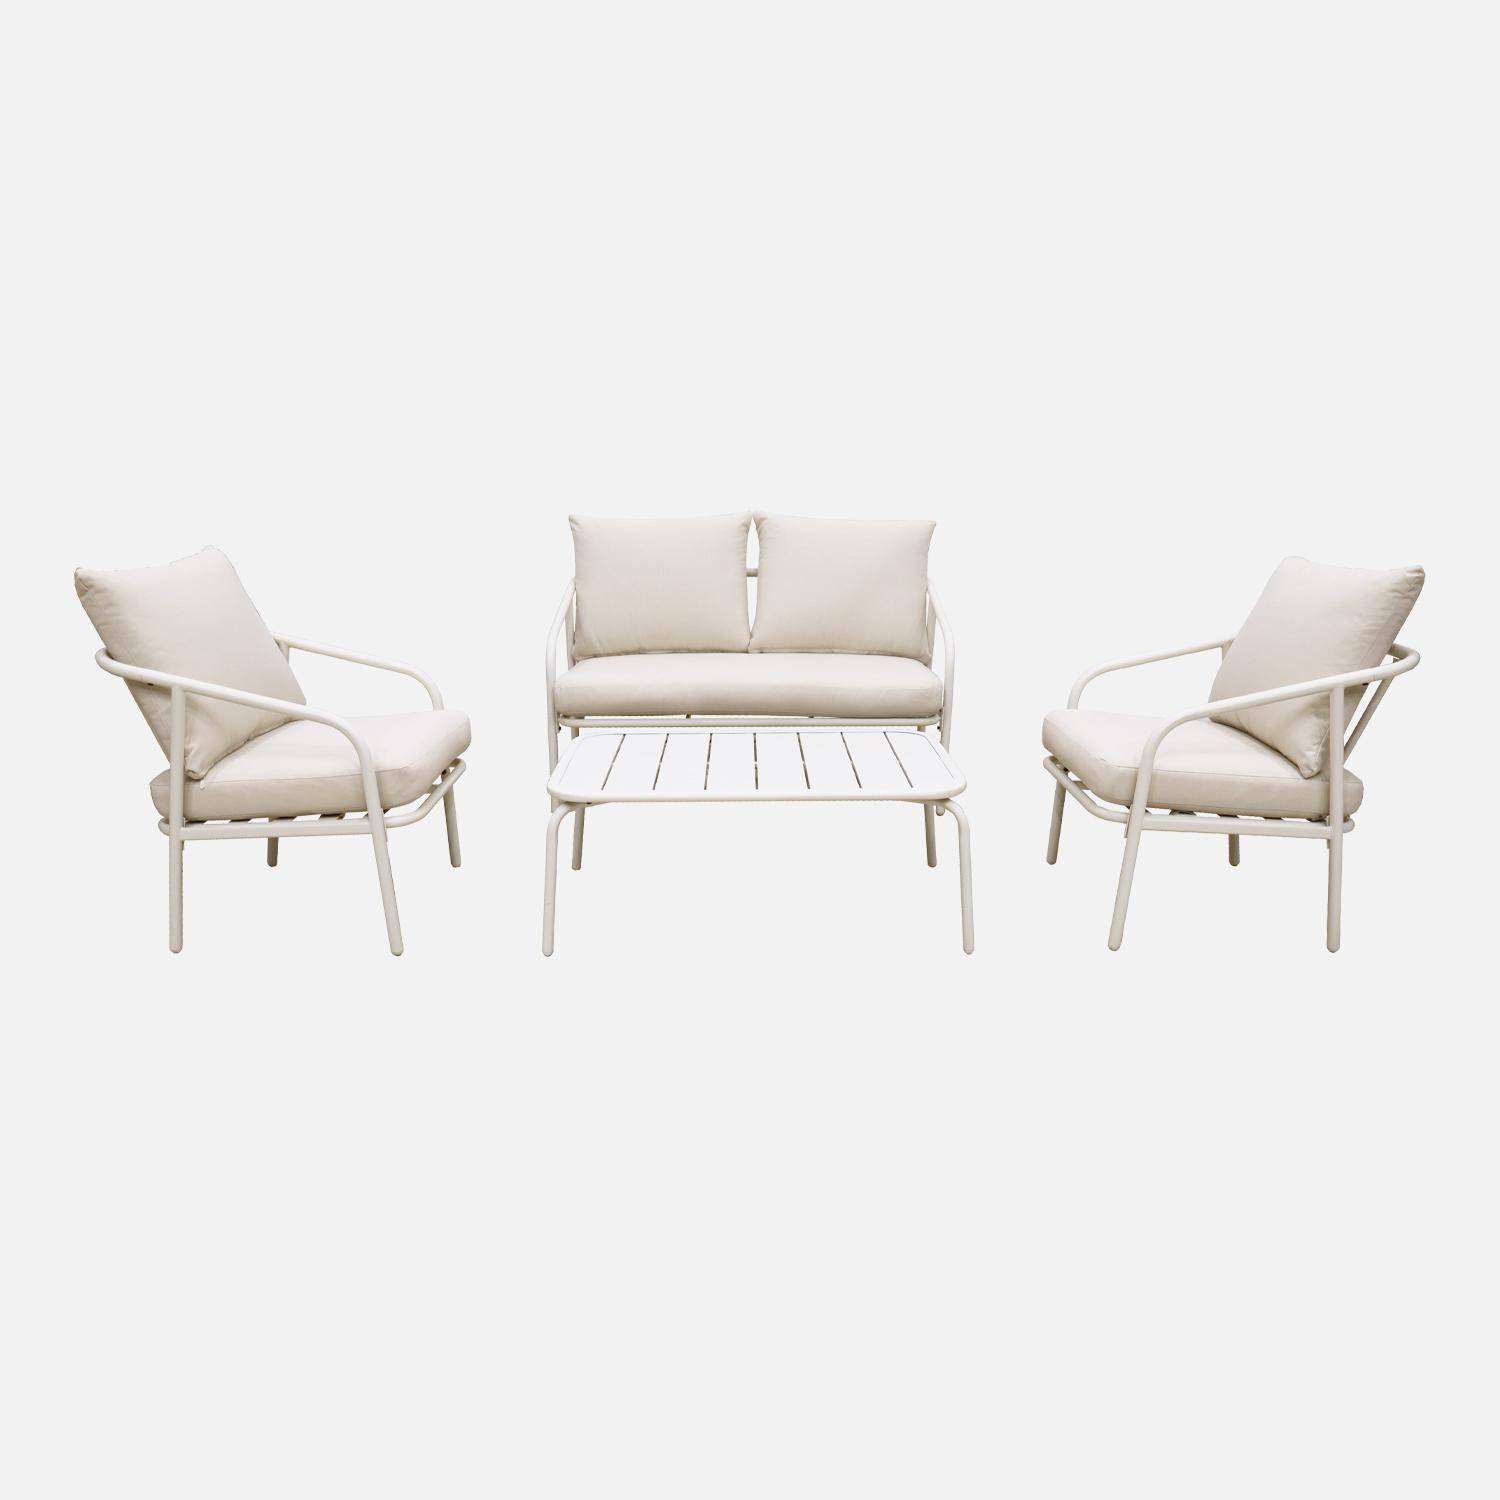 Gartenmöbelset aus Metall 4 Plätze, weiß mit beigefarbenen Kissen, 1 Sofa, 2 Sessel und 1 Tisch - Messina Photo4